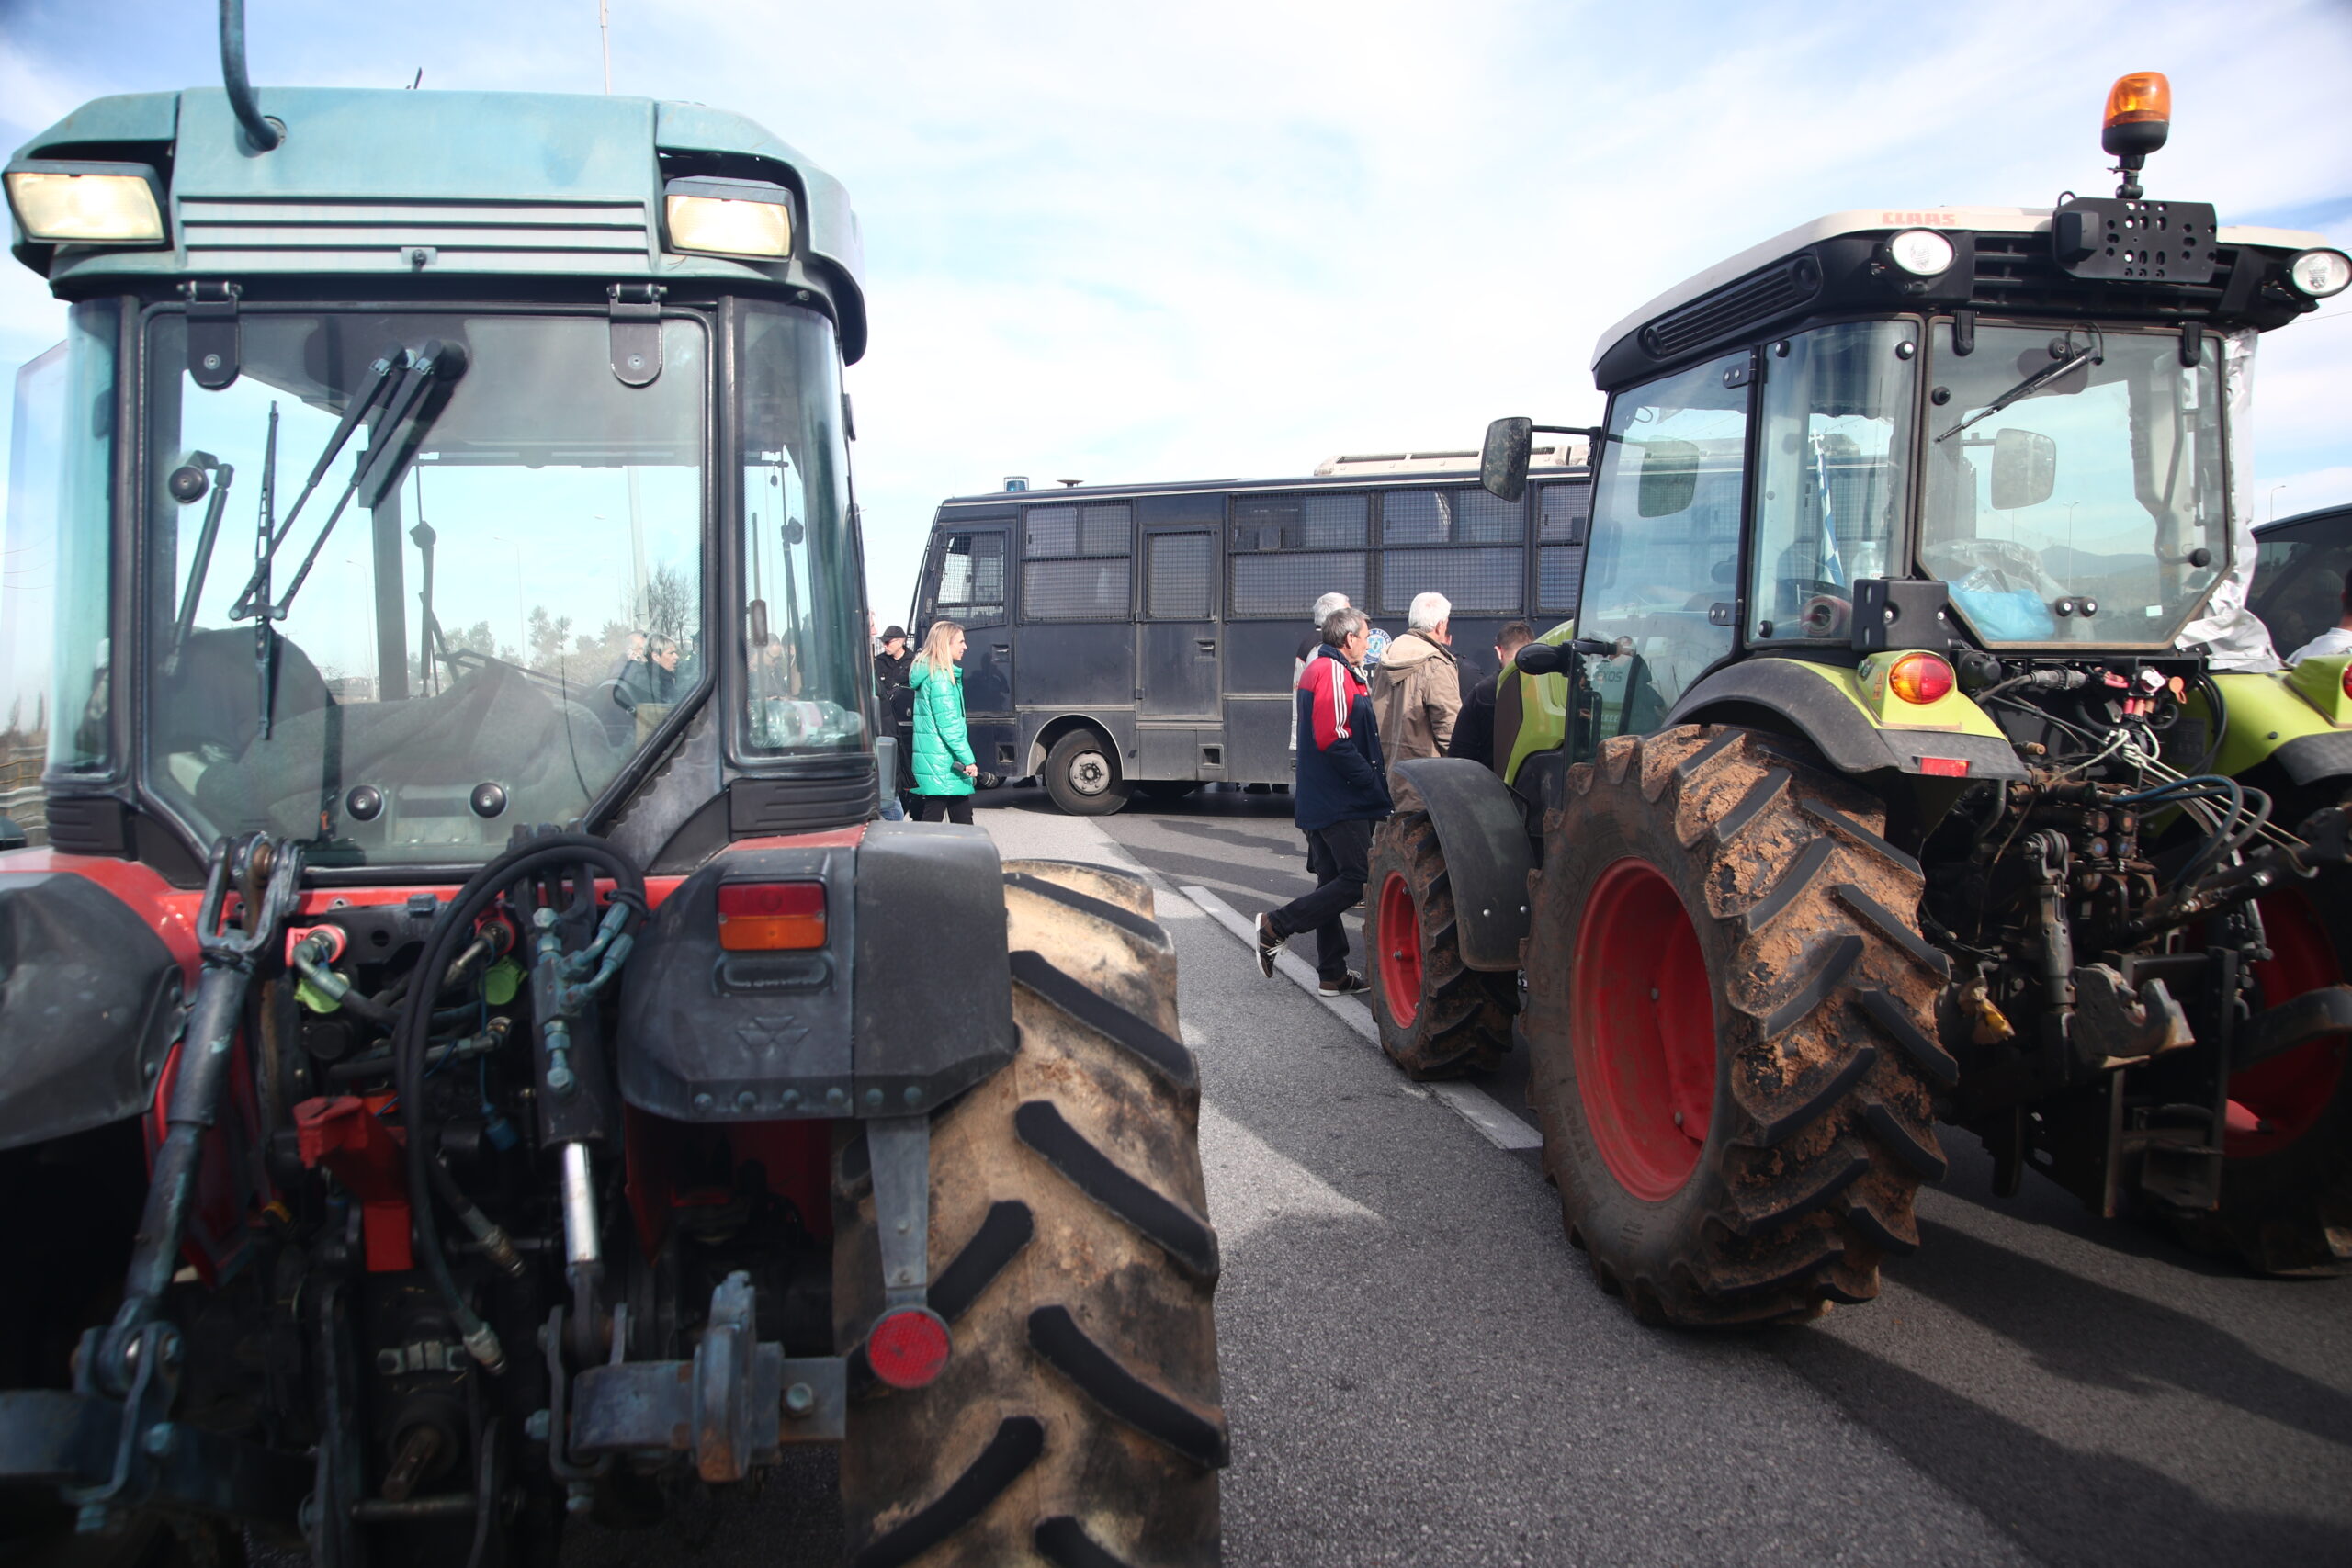 Οι αγρότες κλείνουν επ’ αόριστον την ΕΟ Θεσσαλονίκης-Μουδανιών από αύριο Σάββατο (17/2)